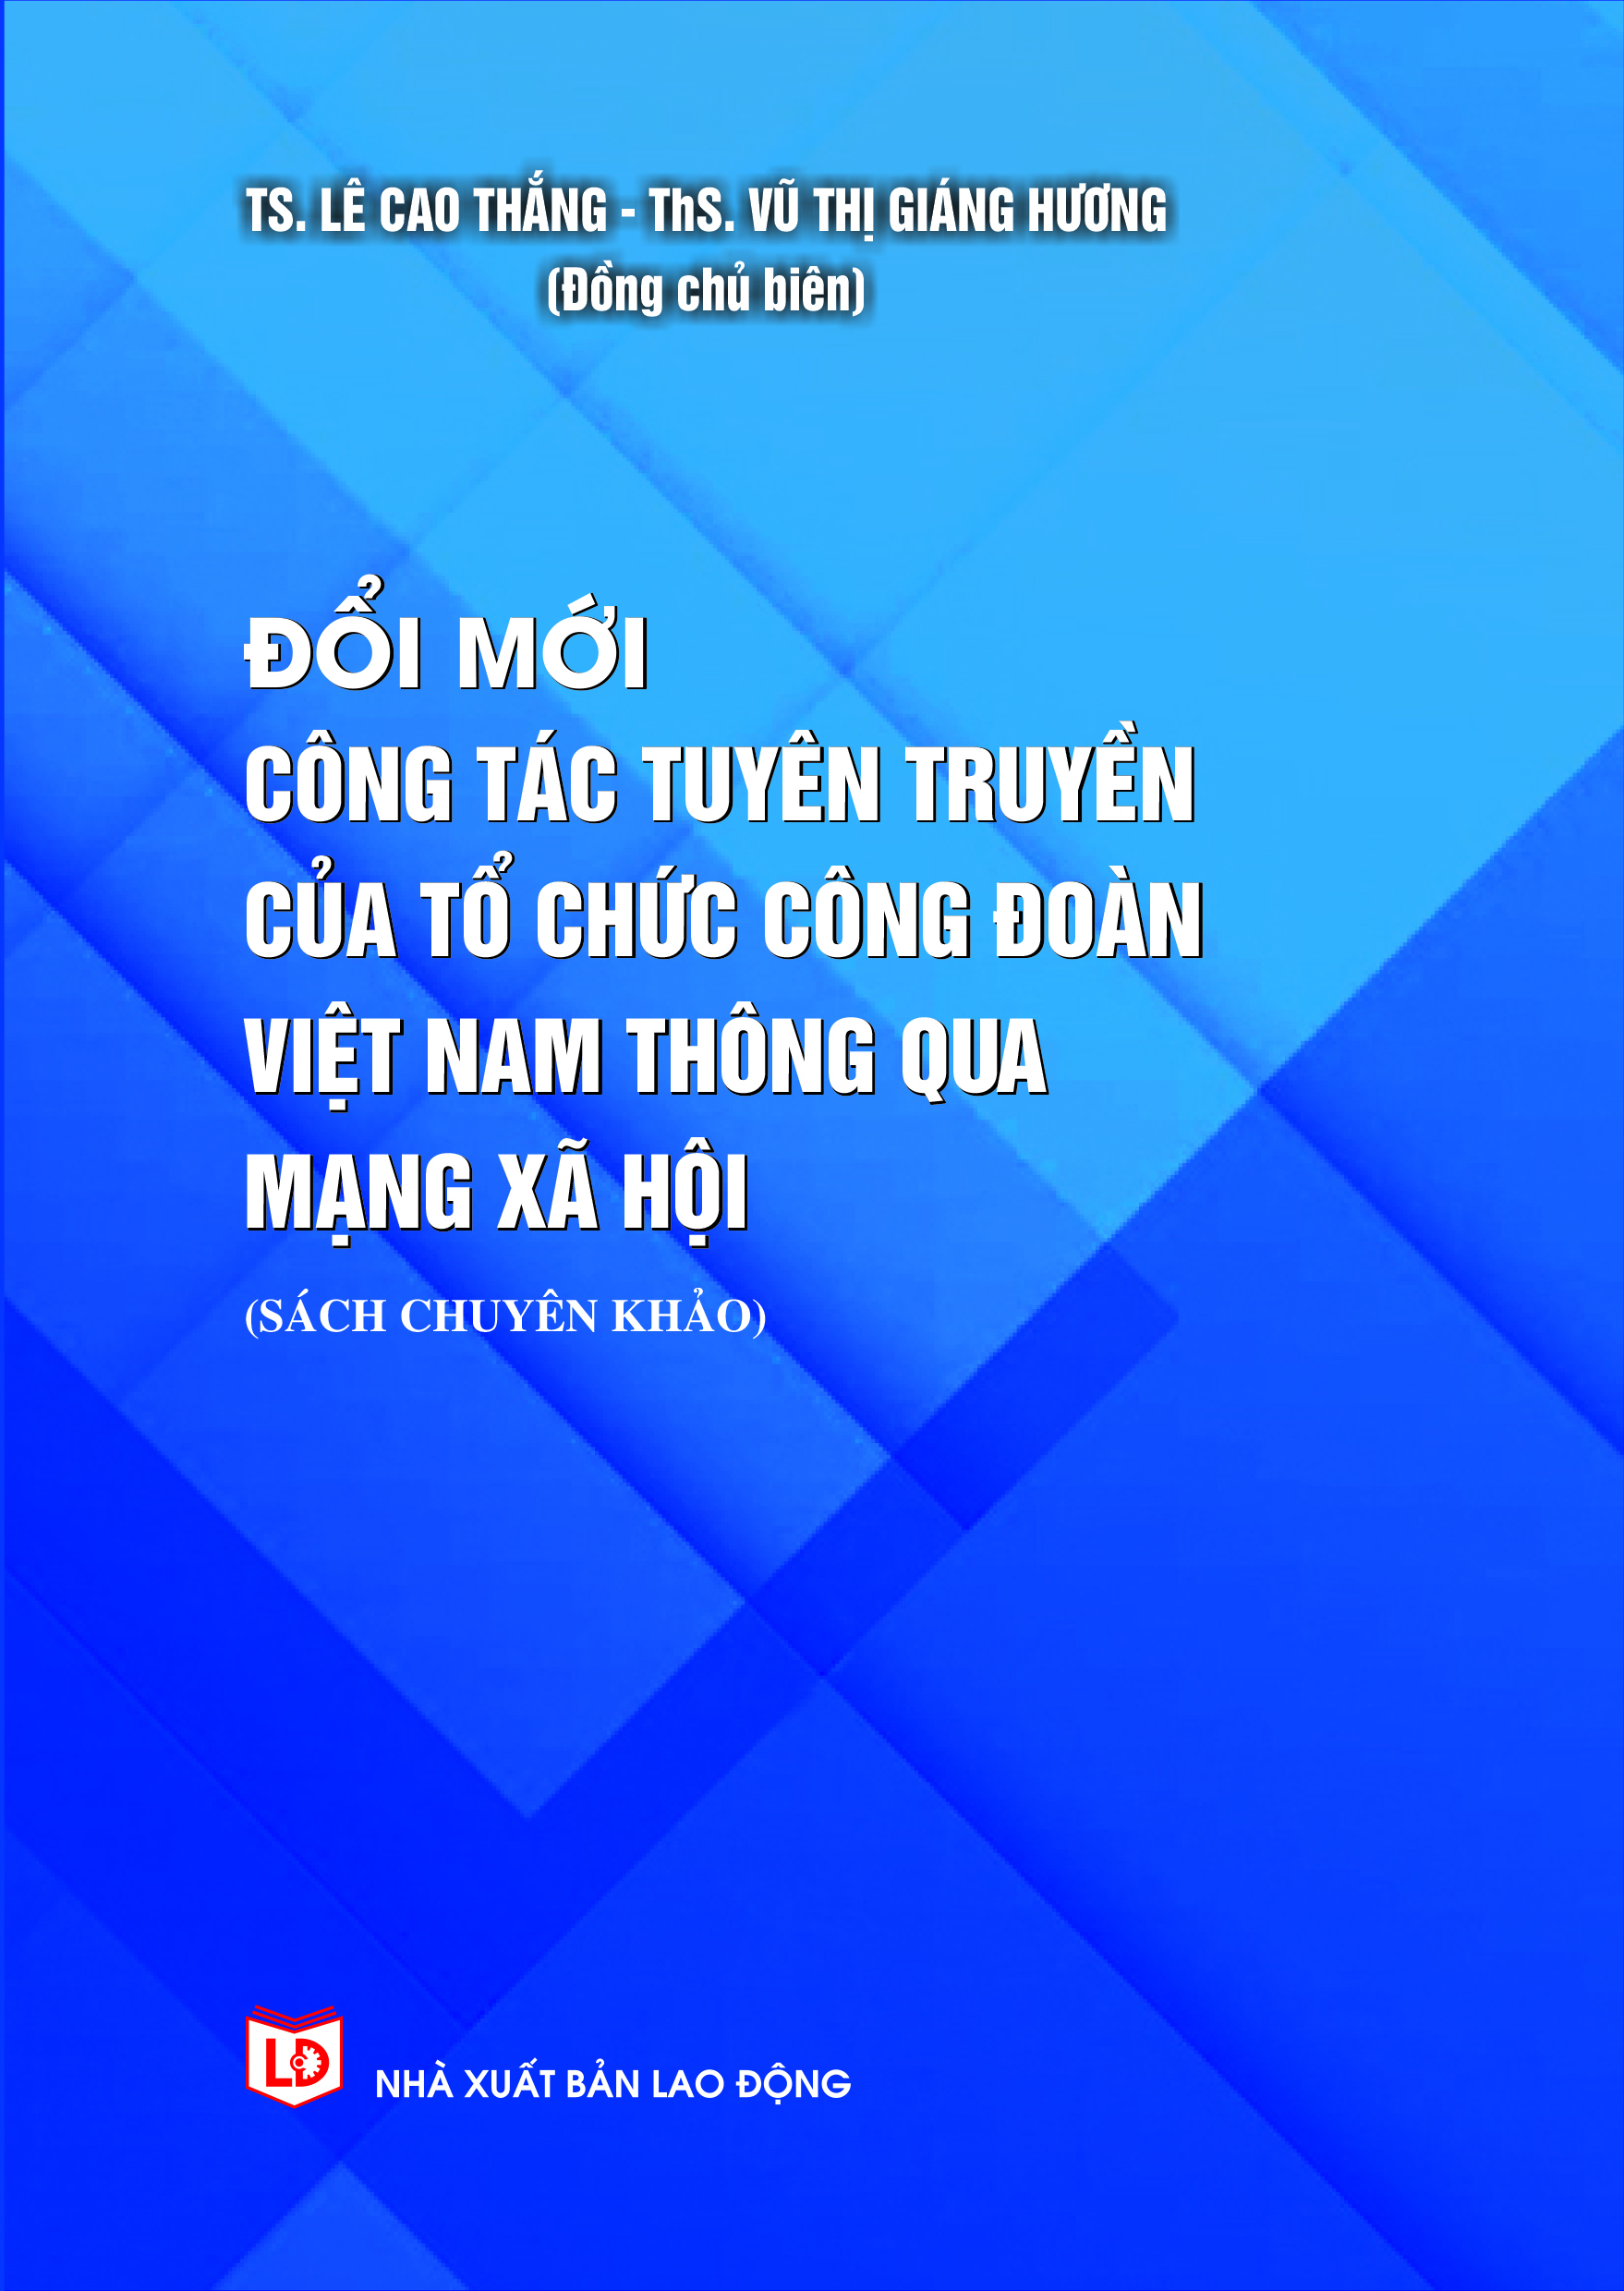 Đổi mới công tác tuyên truyền của Công đoàn Việt Nam thông qua mạng xã hội (Sách chuyên khảo)